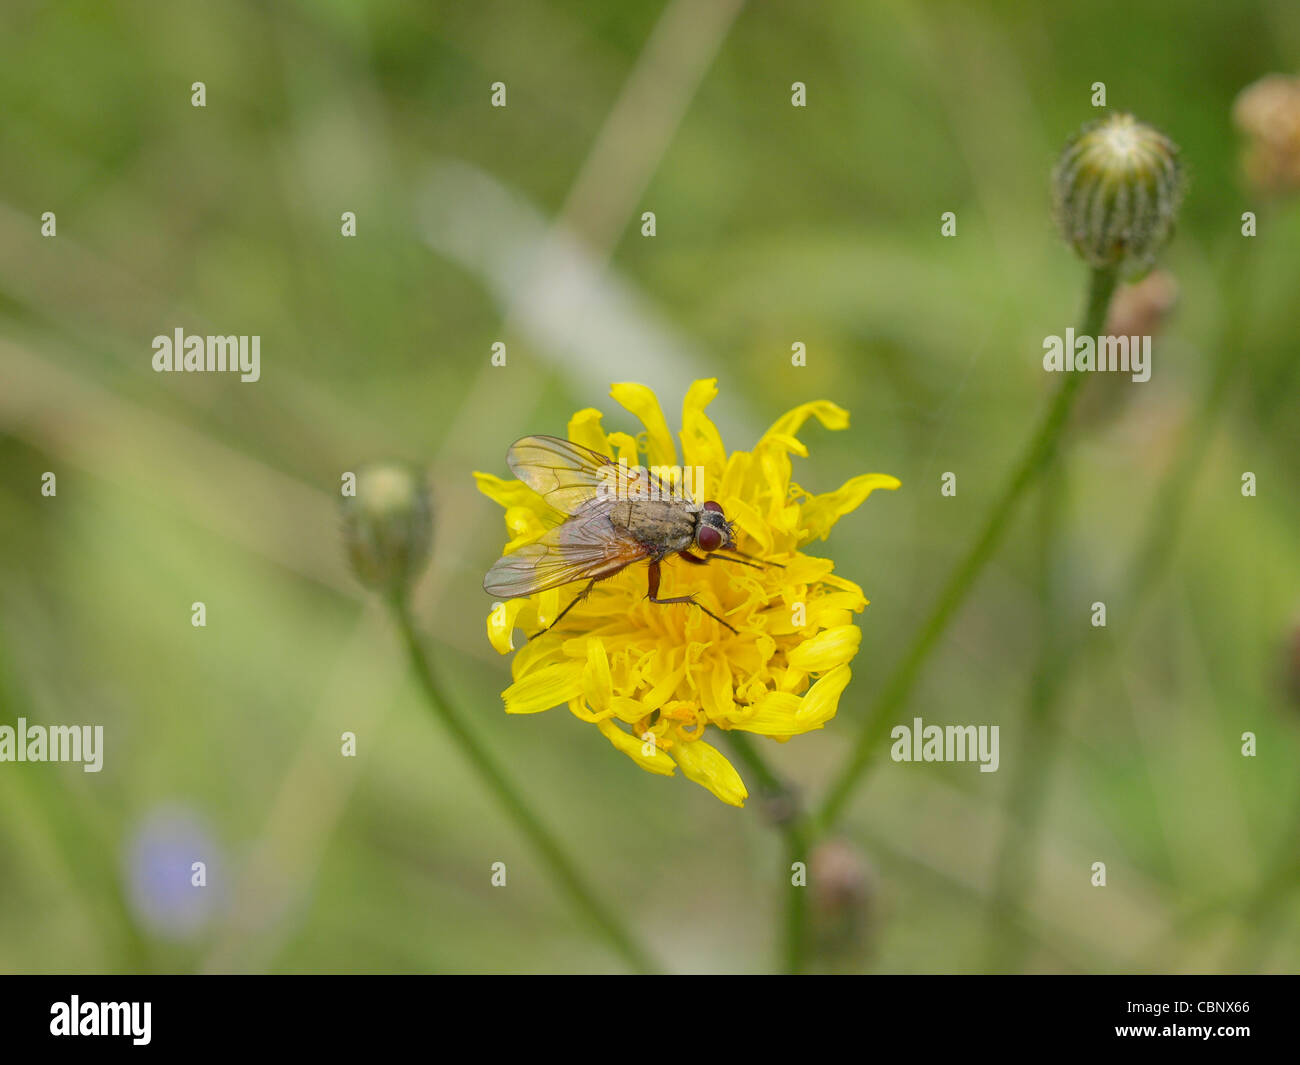 housfly on a bloom / Musca domestica / Gemeine Stubenfliege auf einer Blüte Stock Photo